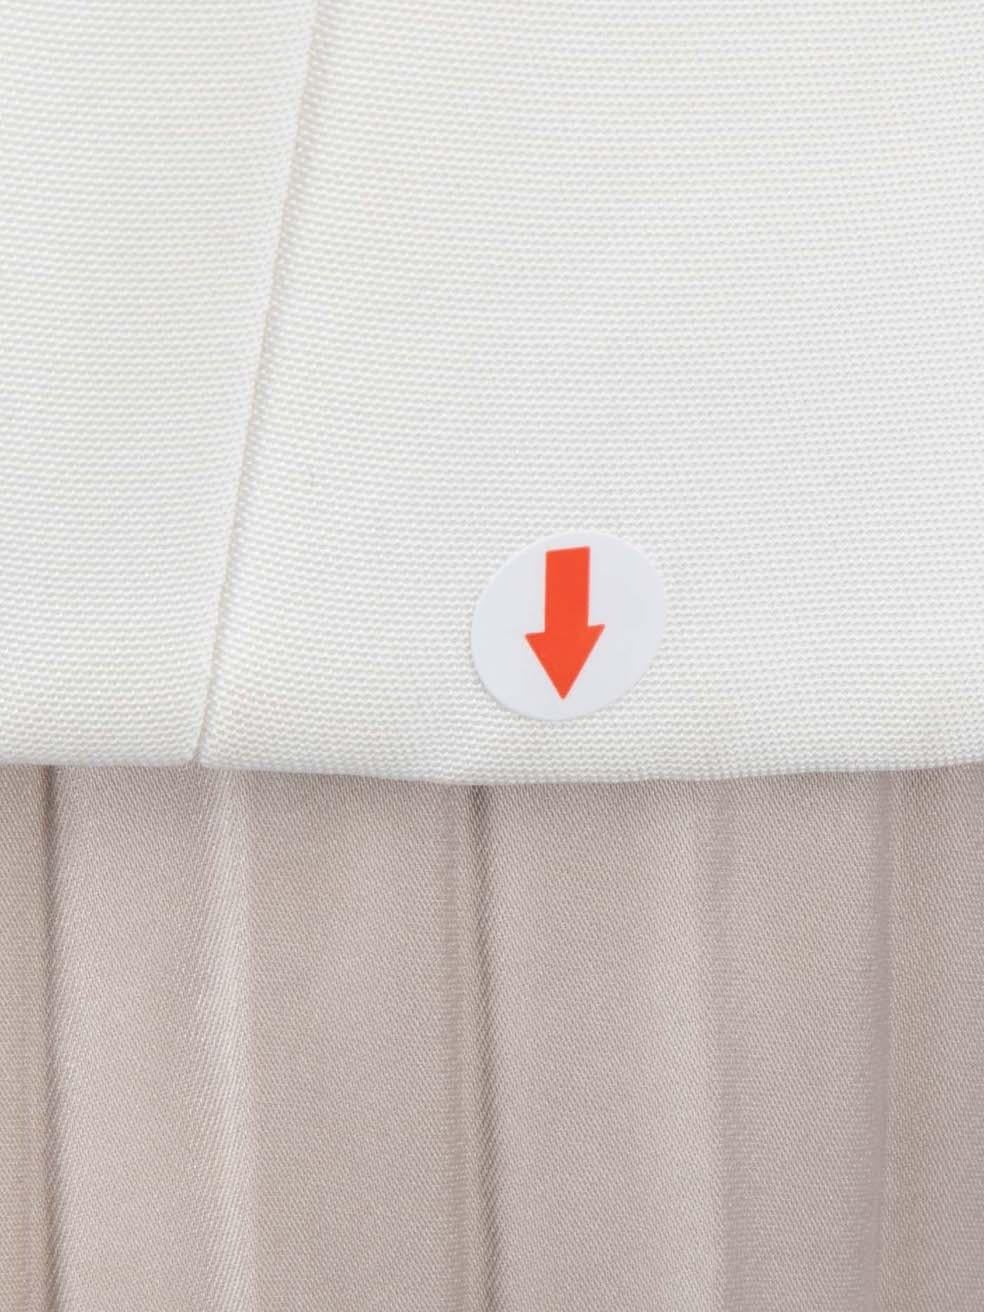 Amanda Wakeley blazer blanc à revers contrasté, taille M Pour femmes en vente